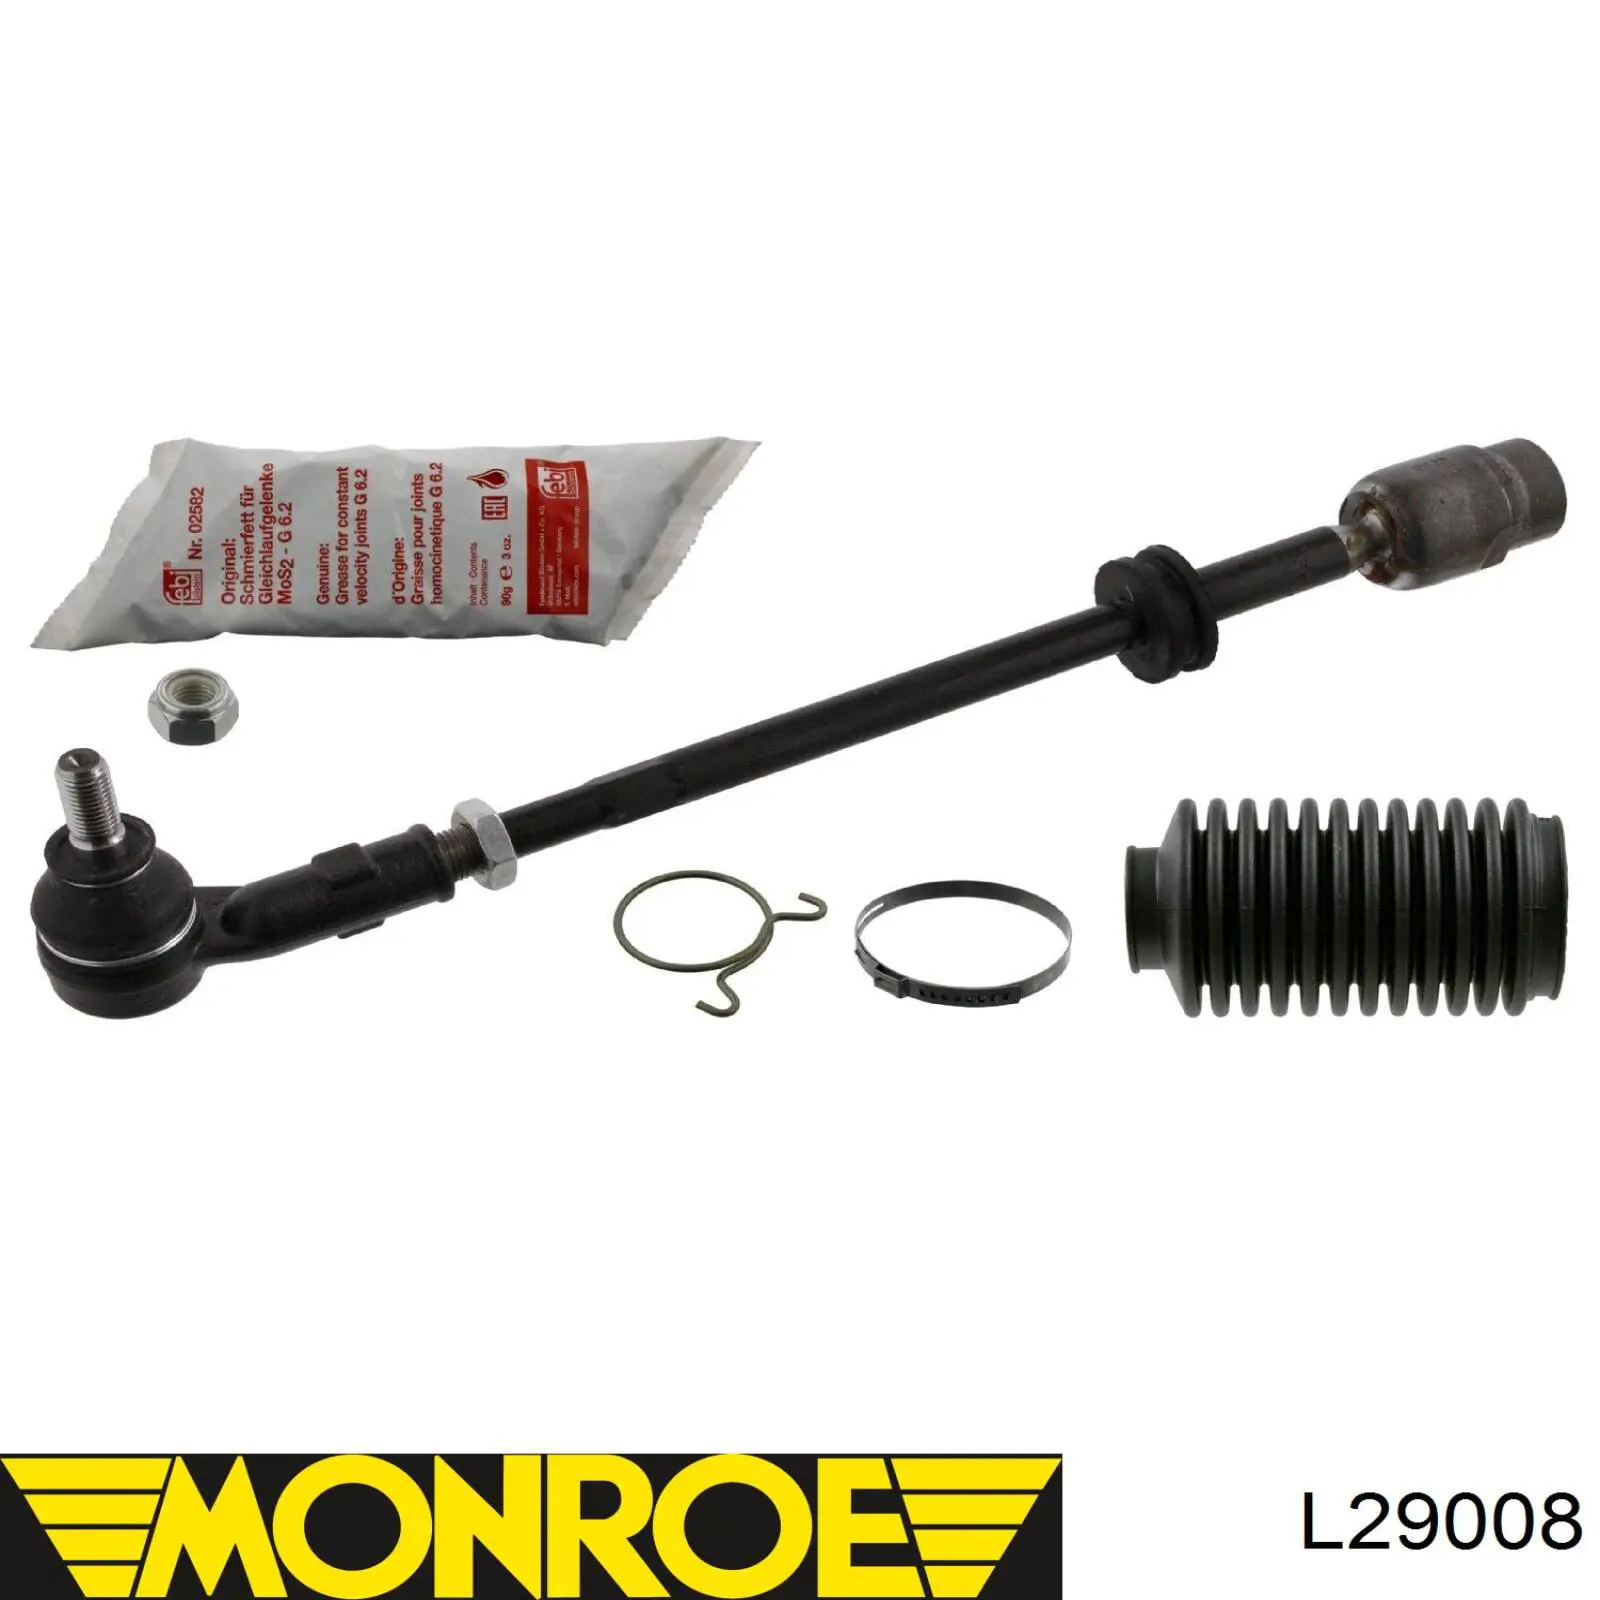 L29008 Monroe barra de acoplamiento